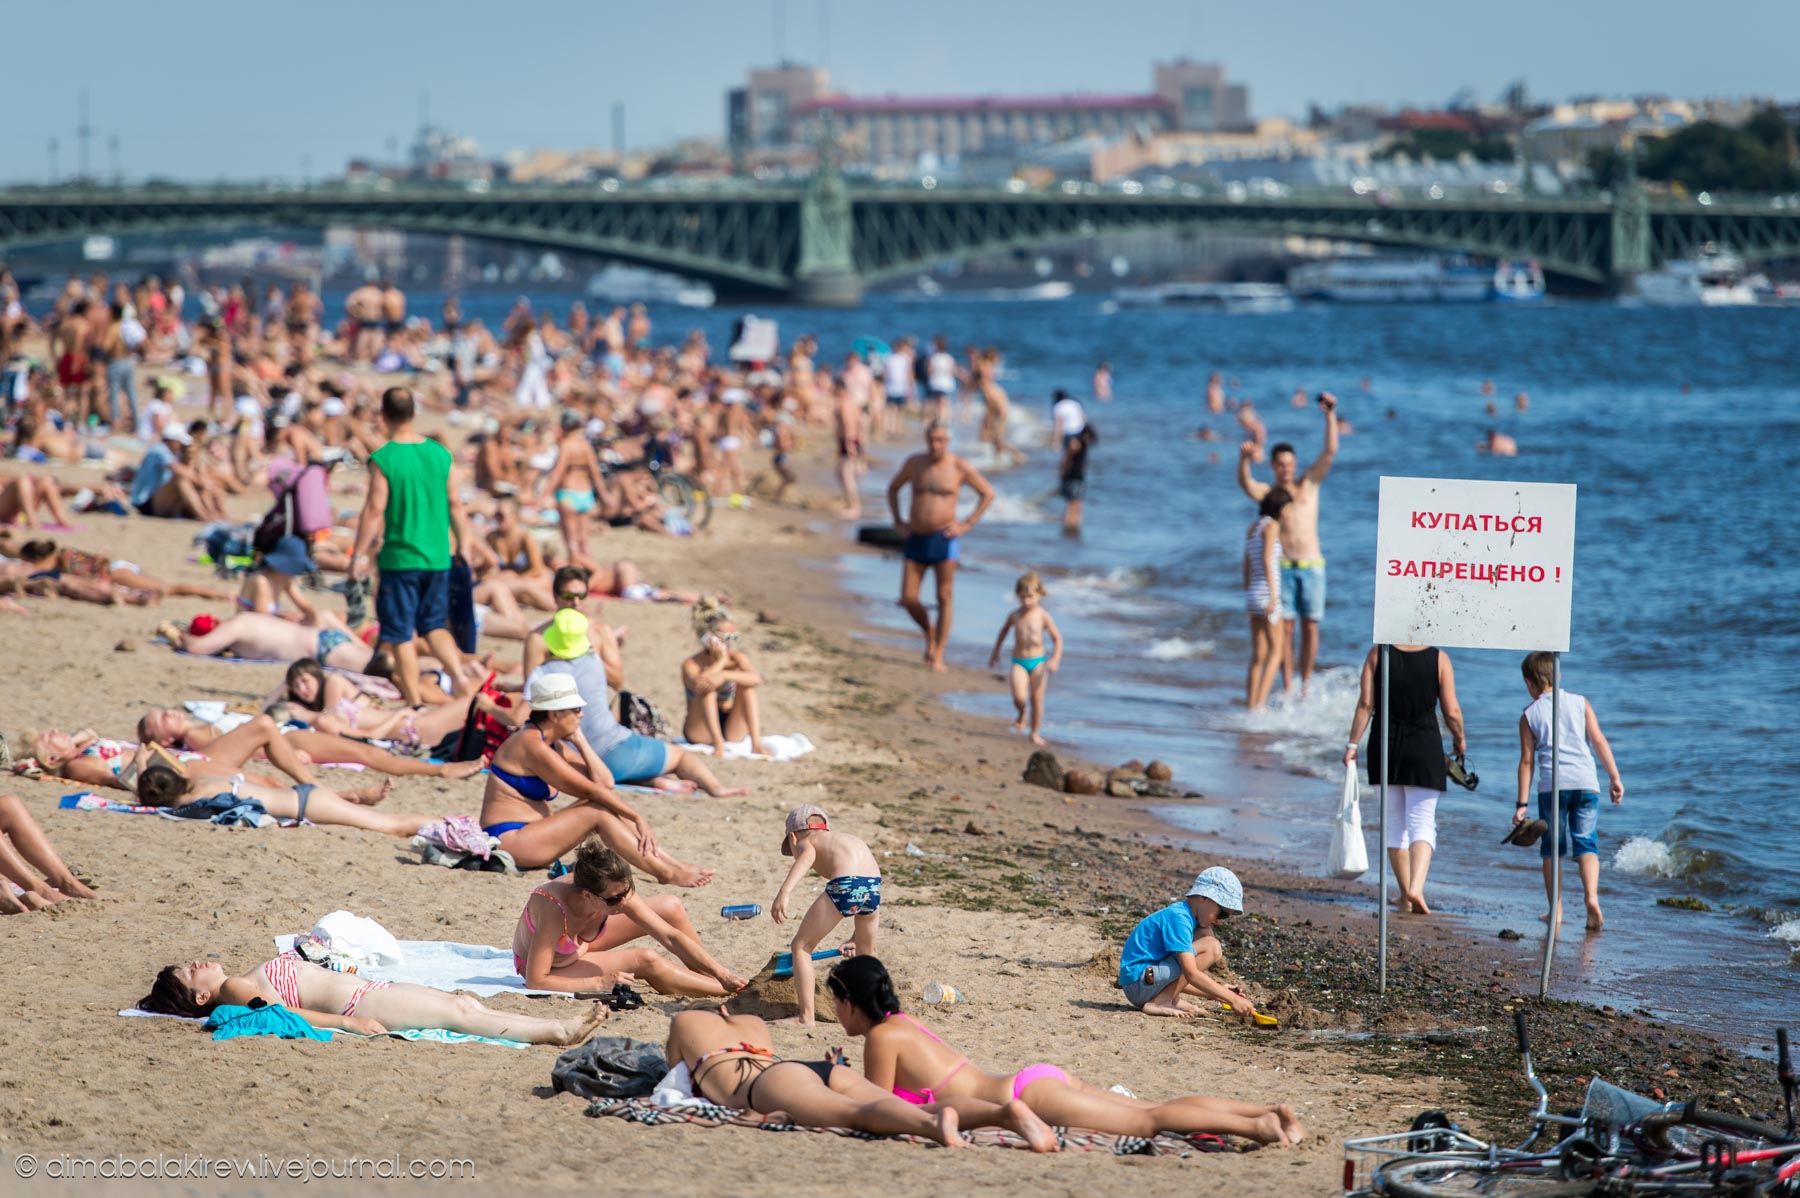 Отдыхая летом в петербурге. Люди на пляже. Пляж с отдыхающими. Пляж Санкт-Петербург. Переполненные пляжи.